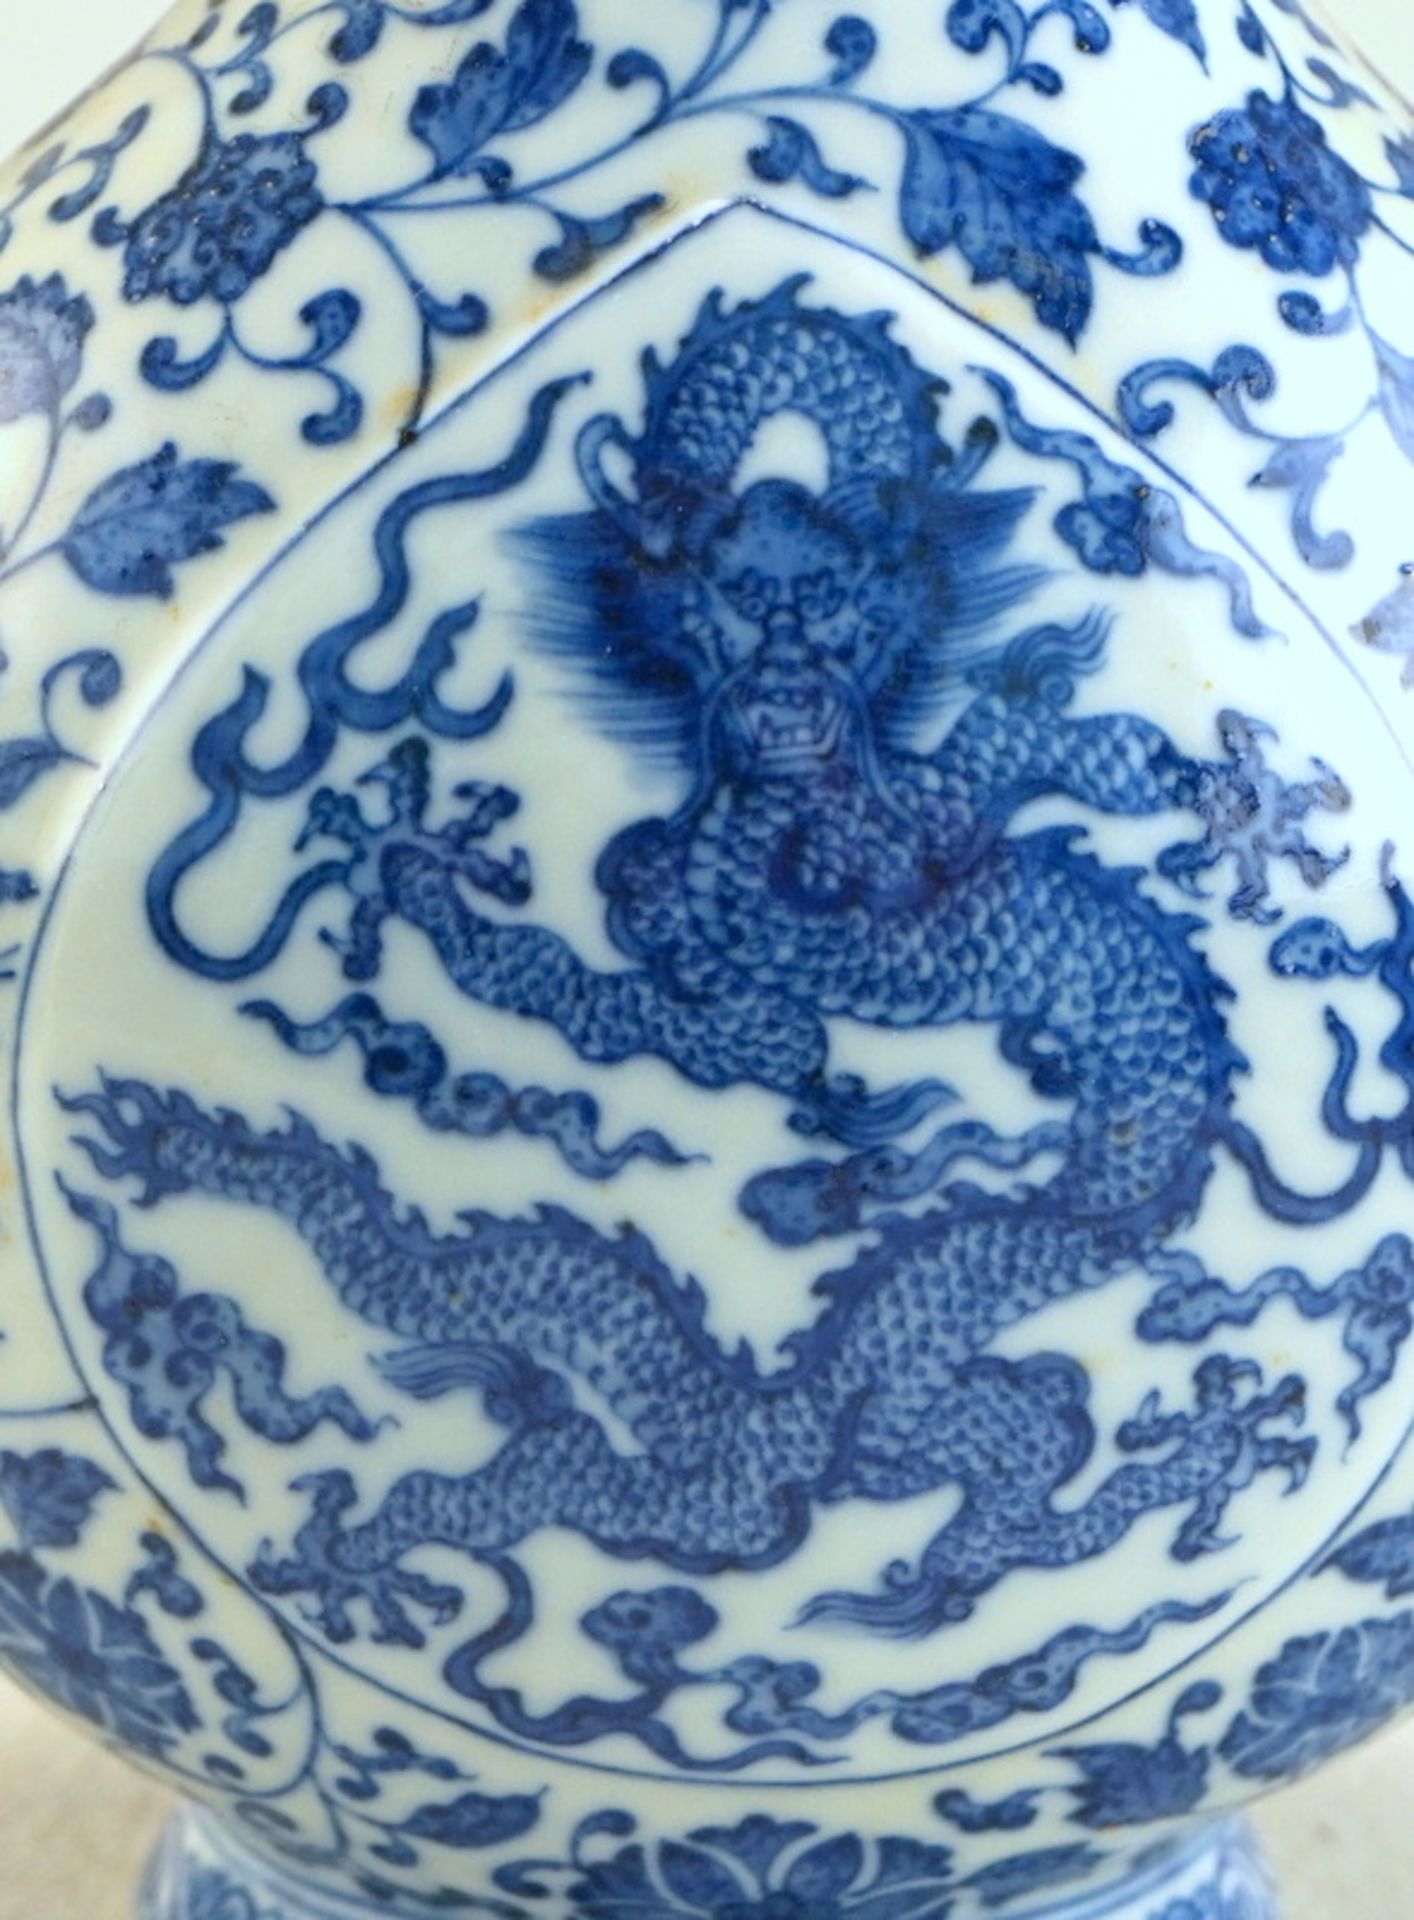 Stegkanne mit Drachensymbolik nach Ming Vorbild - Image 2 of 4